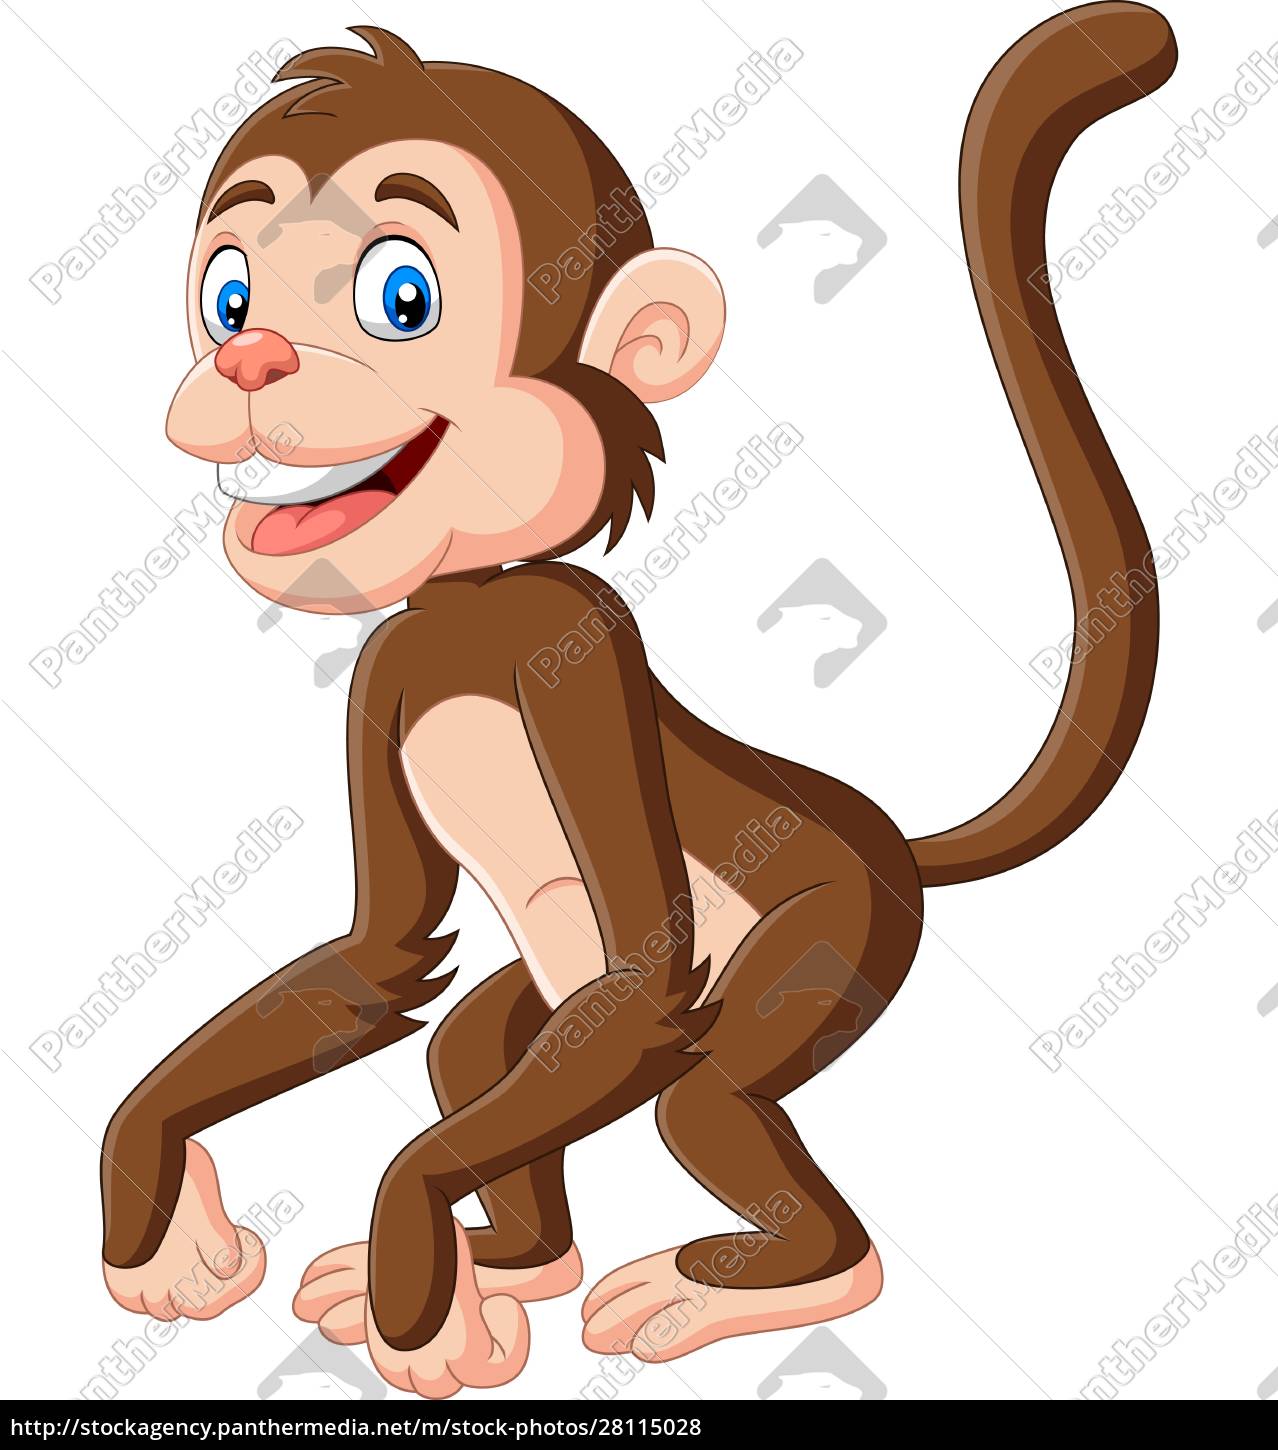 Fotos de Macaco desenho fofo, Imagens de Macaco desenho fofo sem